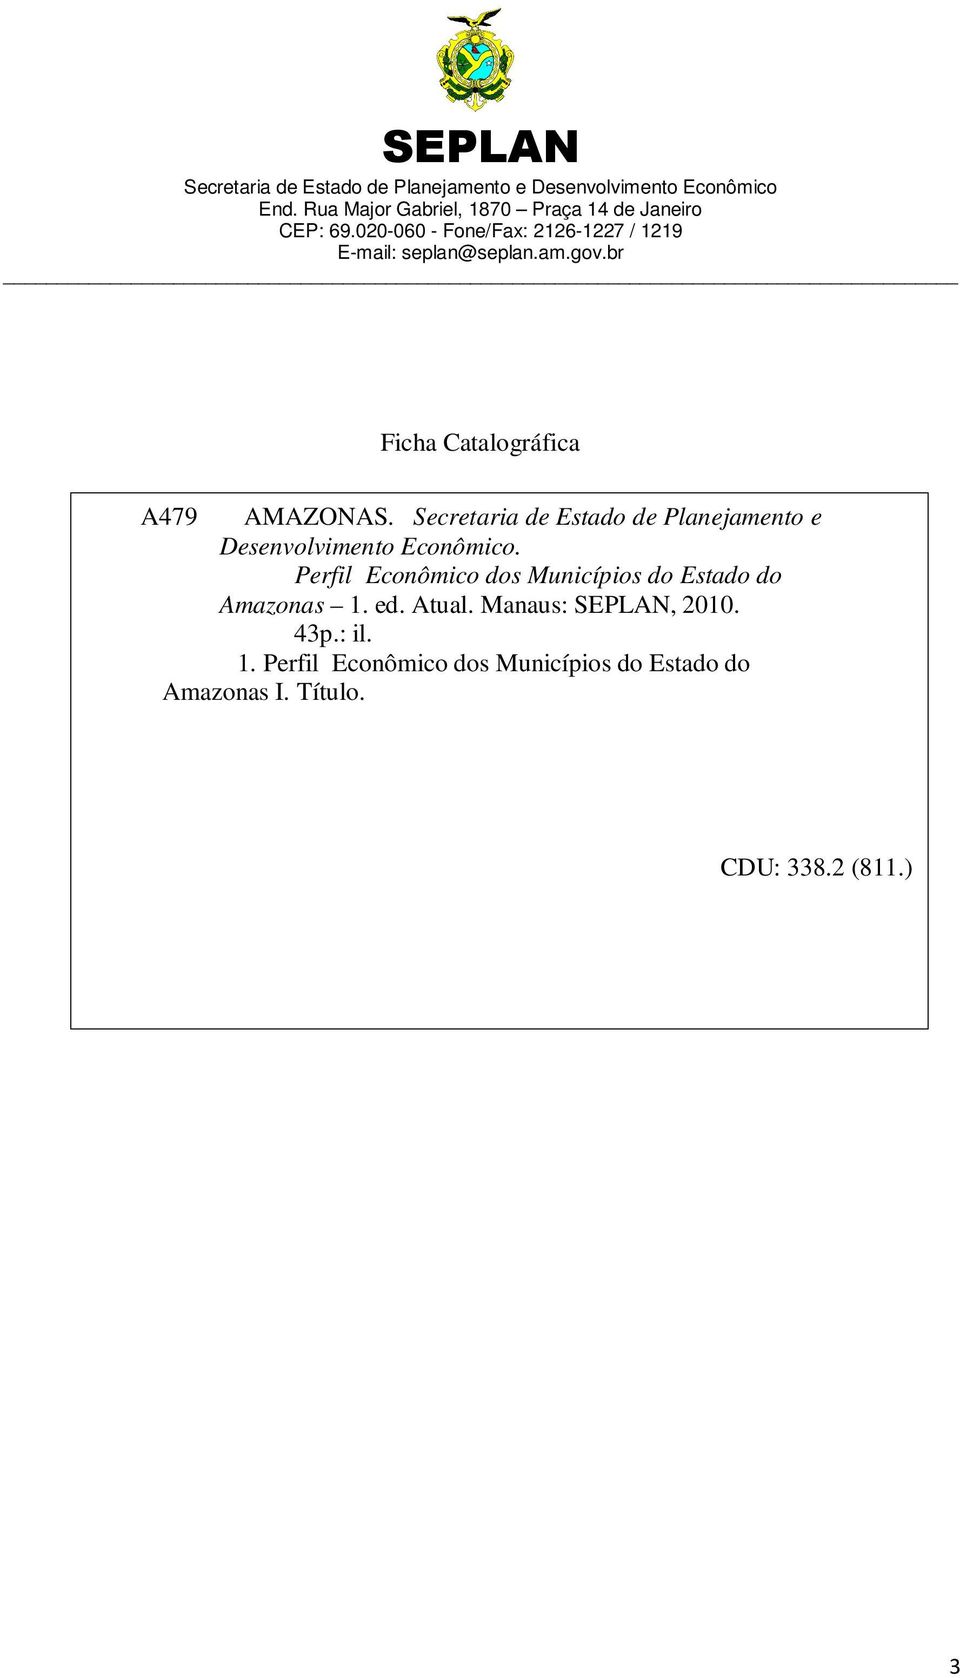 Perfil Econômico dos Municípios do Estado do Amazonas 1. ed. Atual.